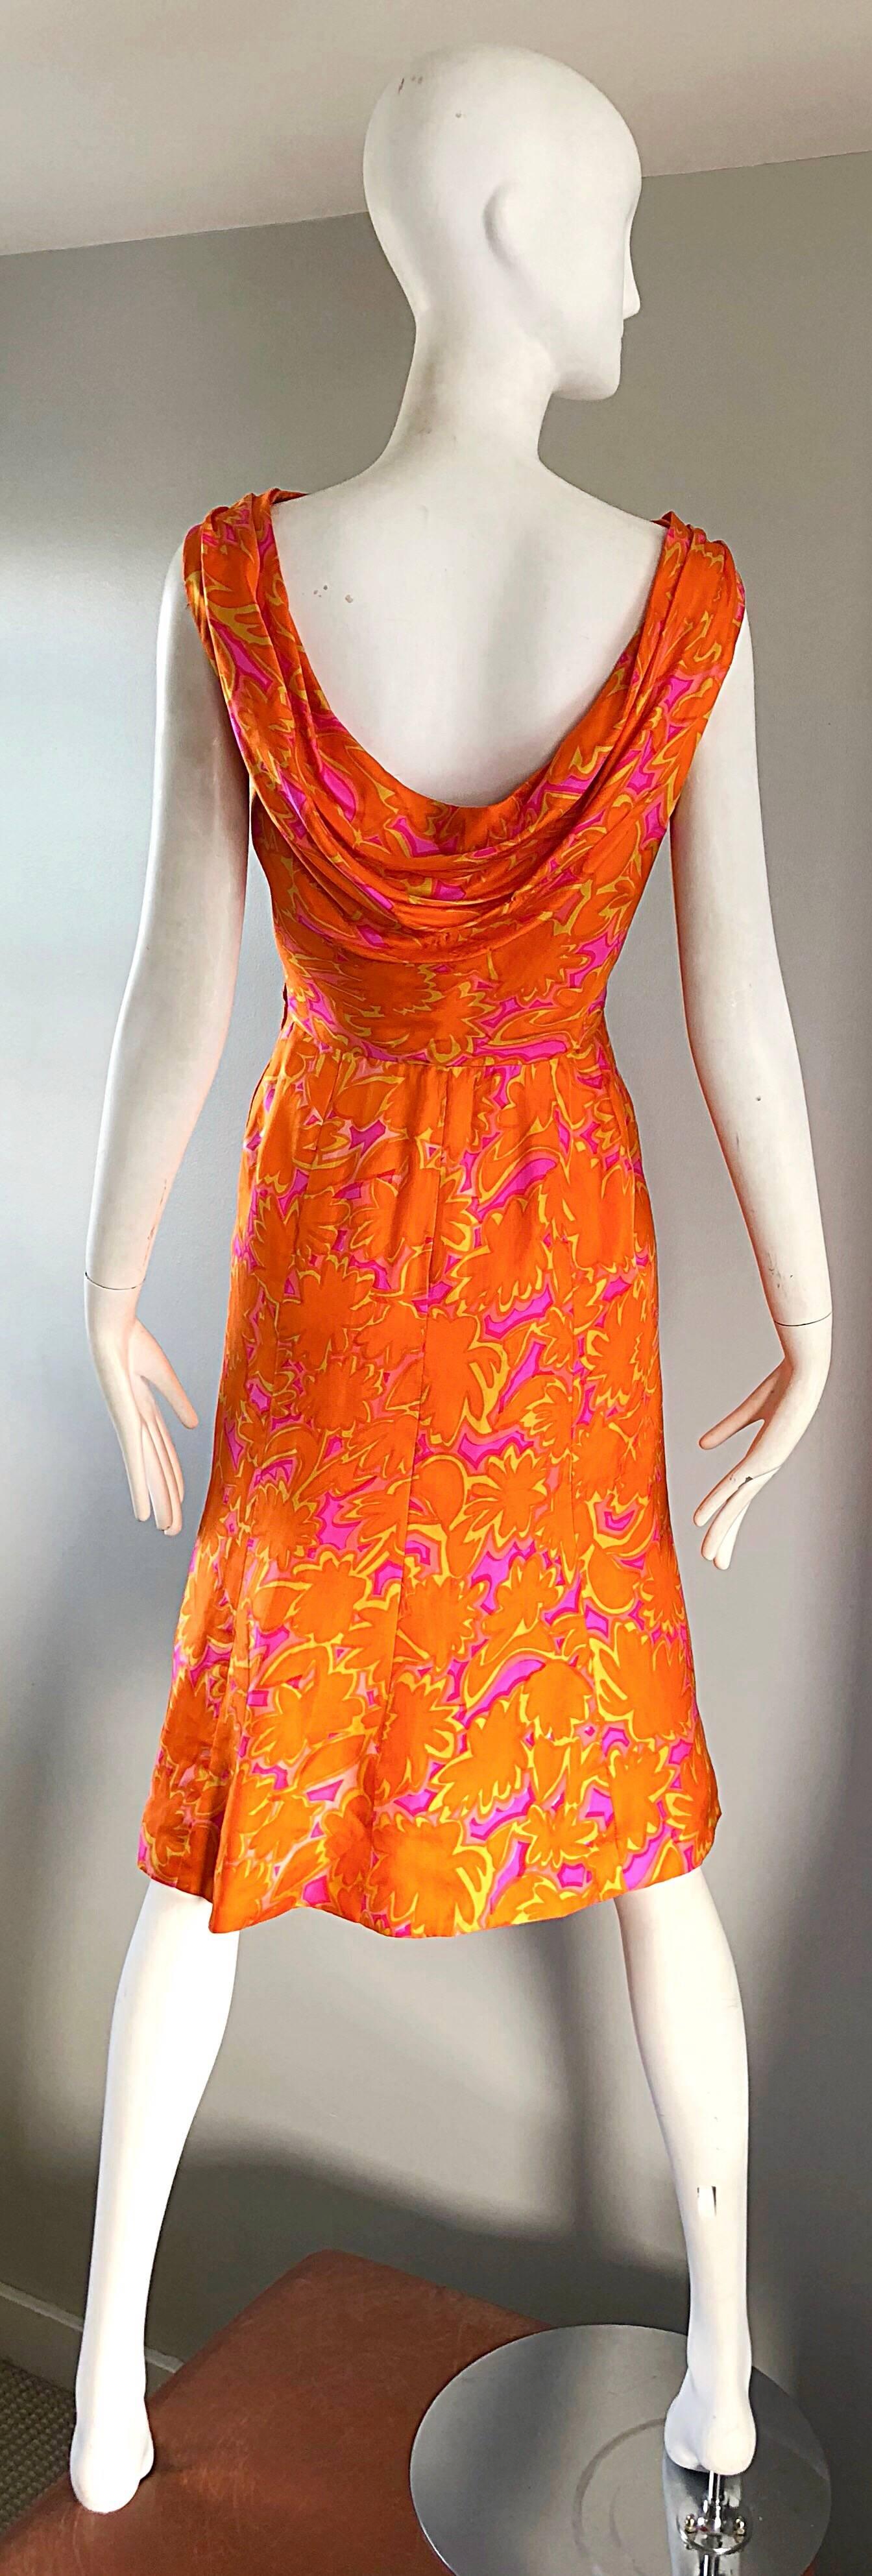 neon orange silk dress